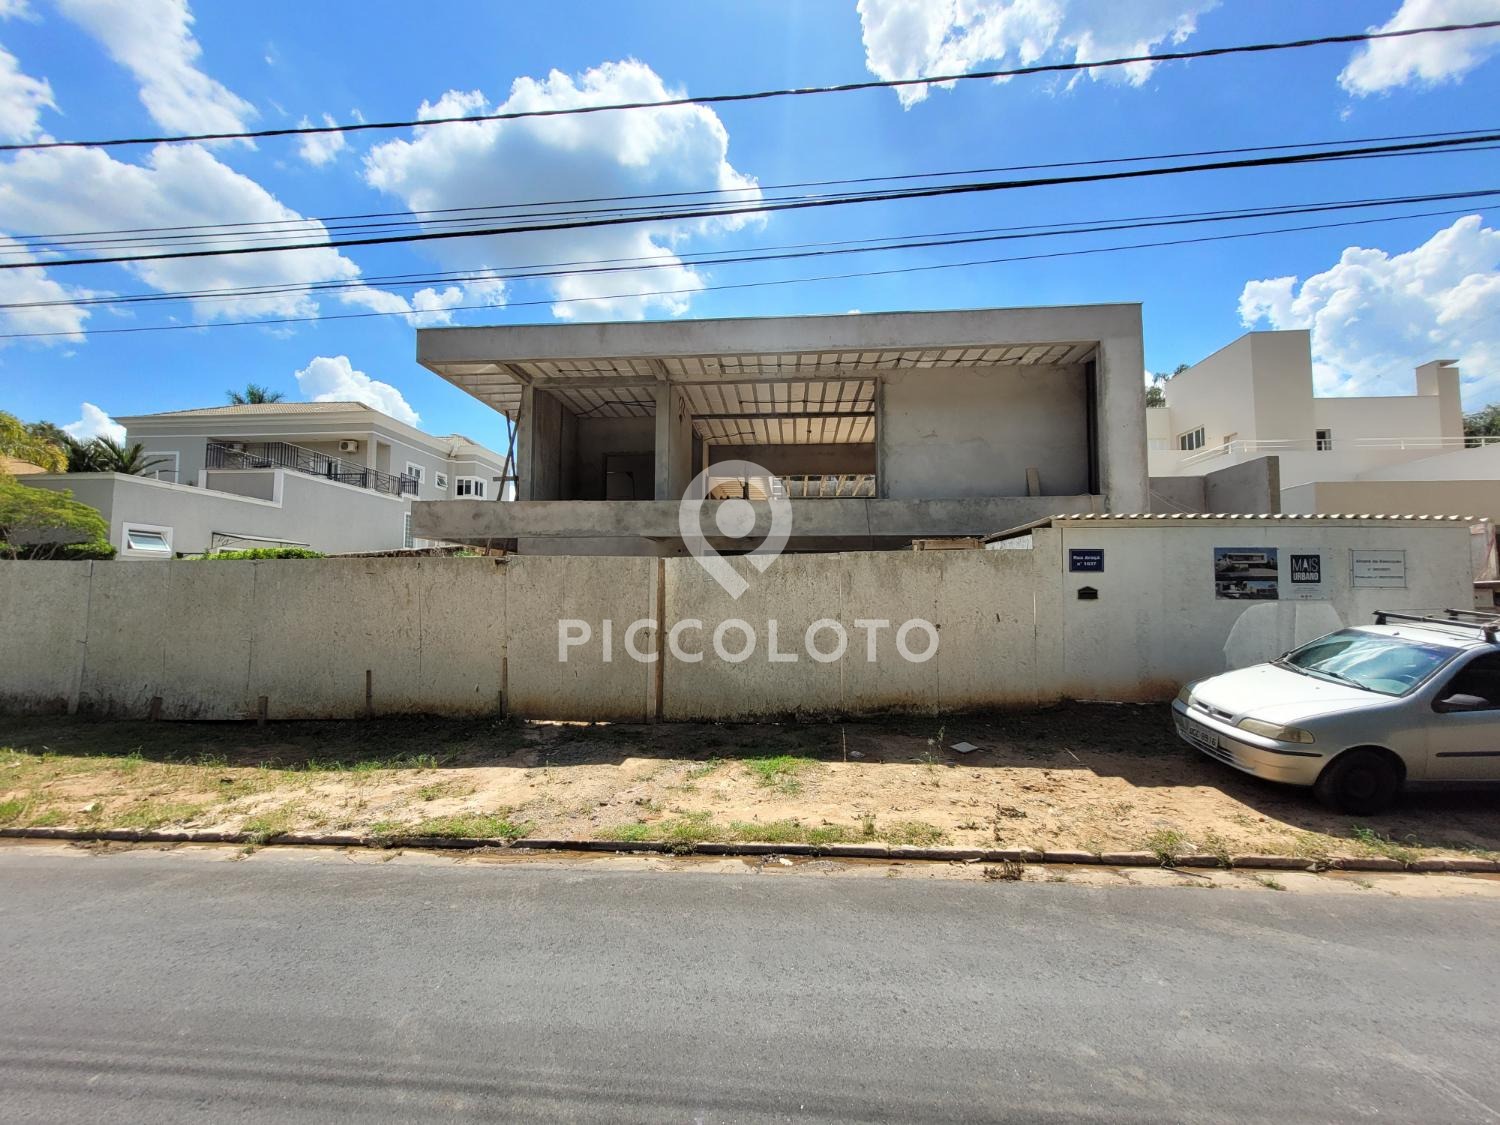 Piccoloto - Casa à venda no Loteamento Alphaville Campinas em Campinas